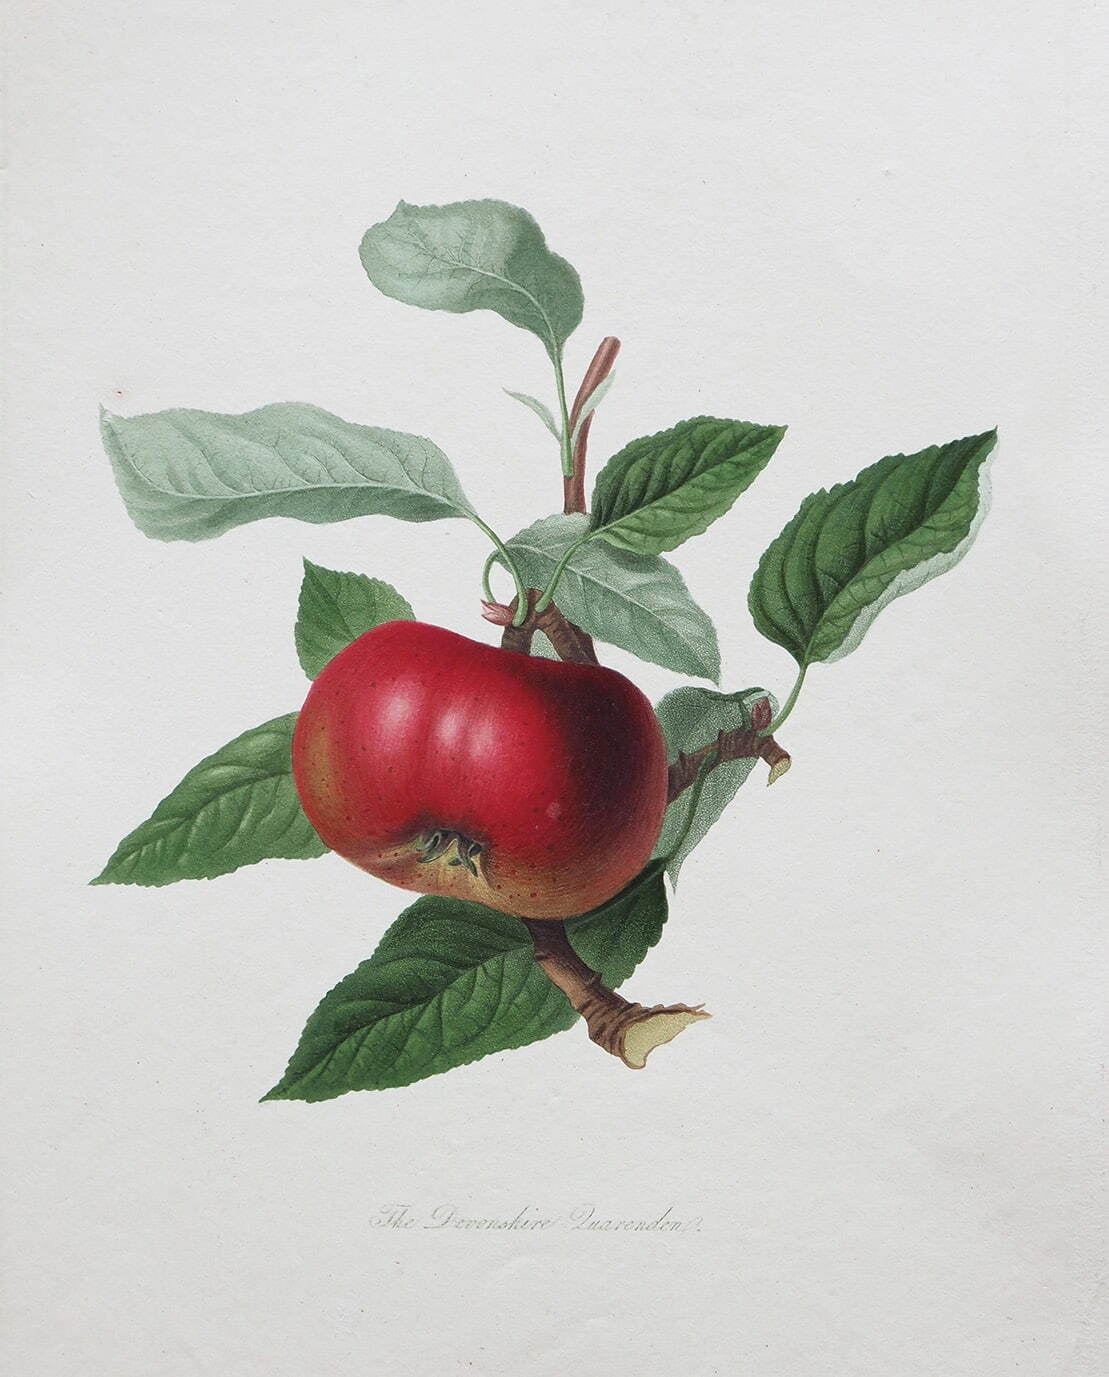 ウィリアム・フッカー《リンゴ「デヴォンシャー・カレンデン」》1818年
Photo Michael Whiteway